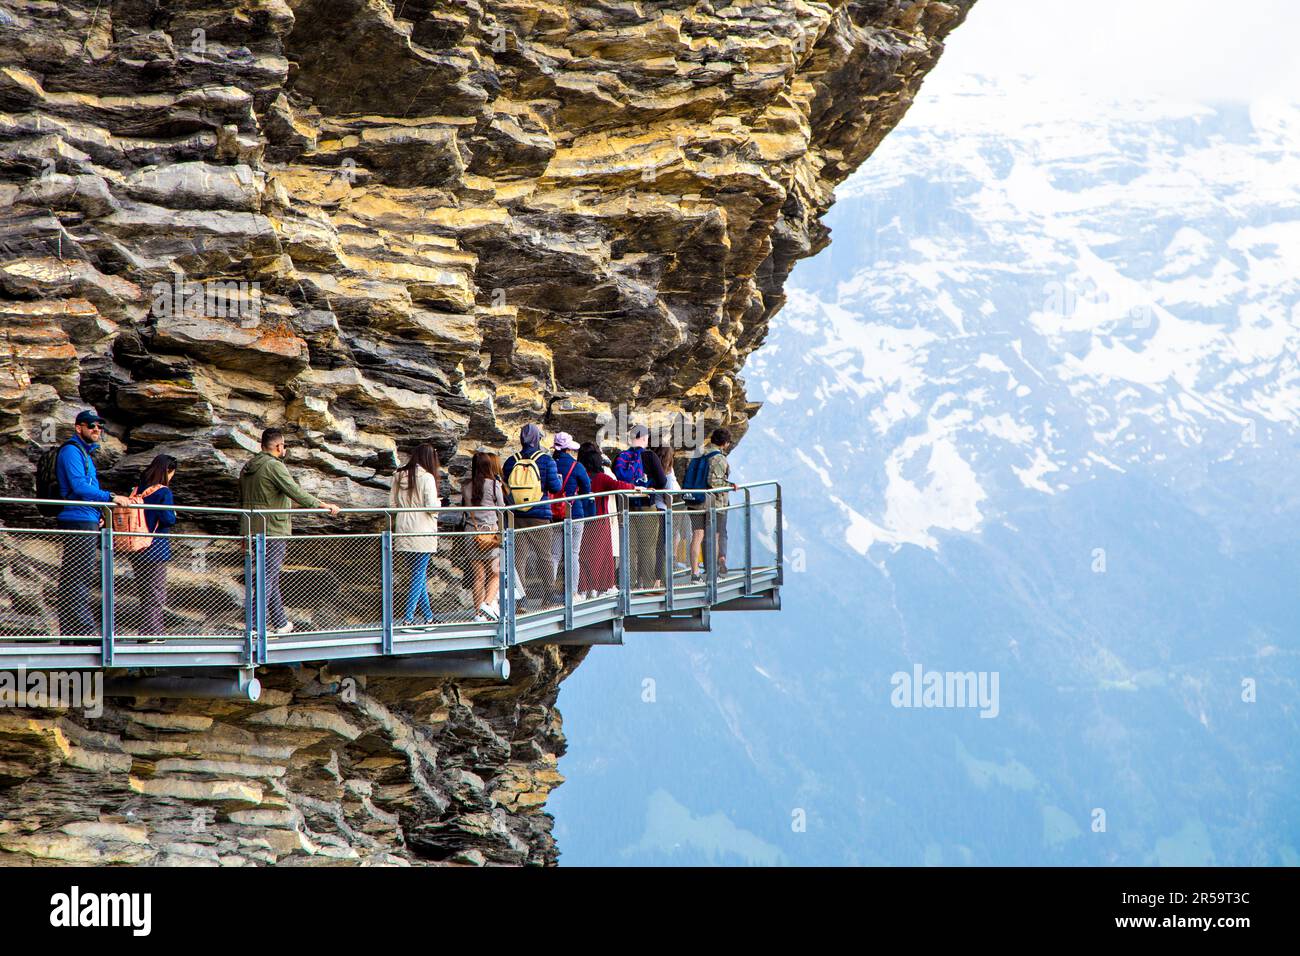 Menschen auf dem ersten Cliff Walk auf dem ersten Berggipfel in der Schweiz Stockfoto